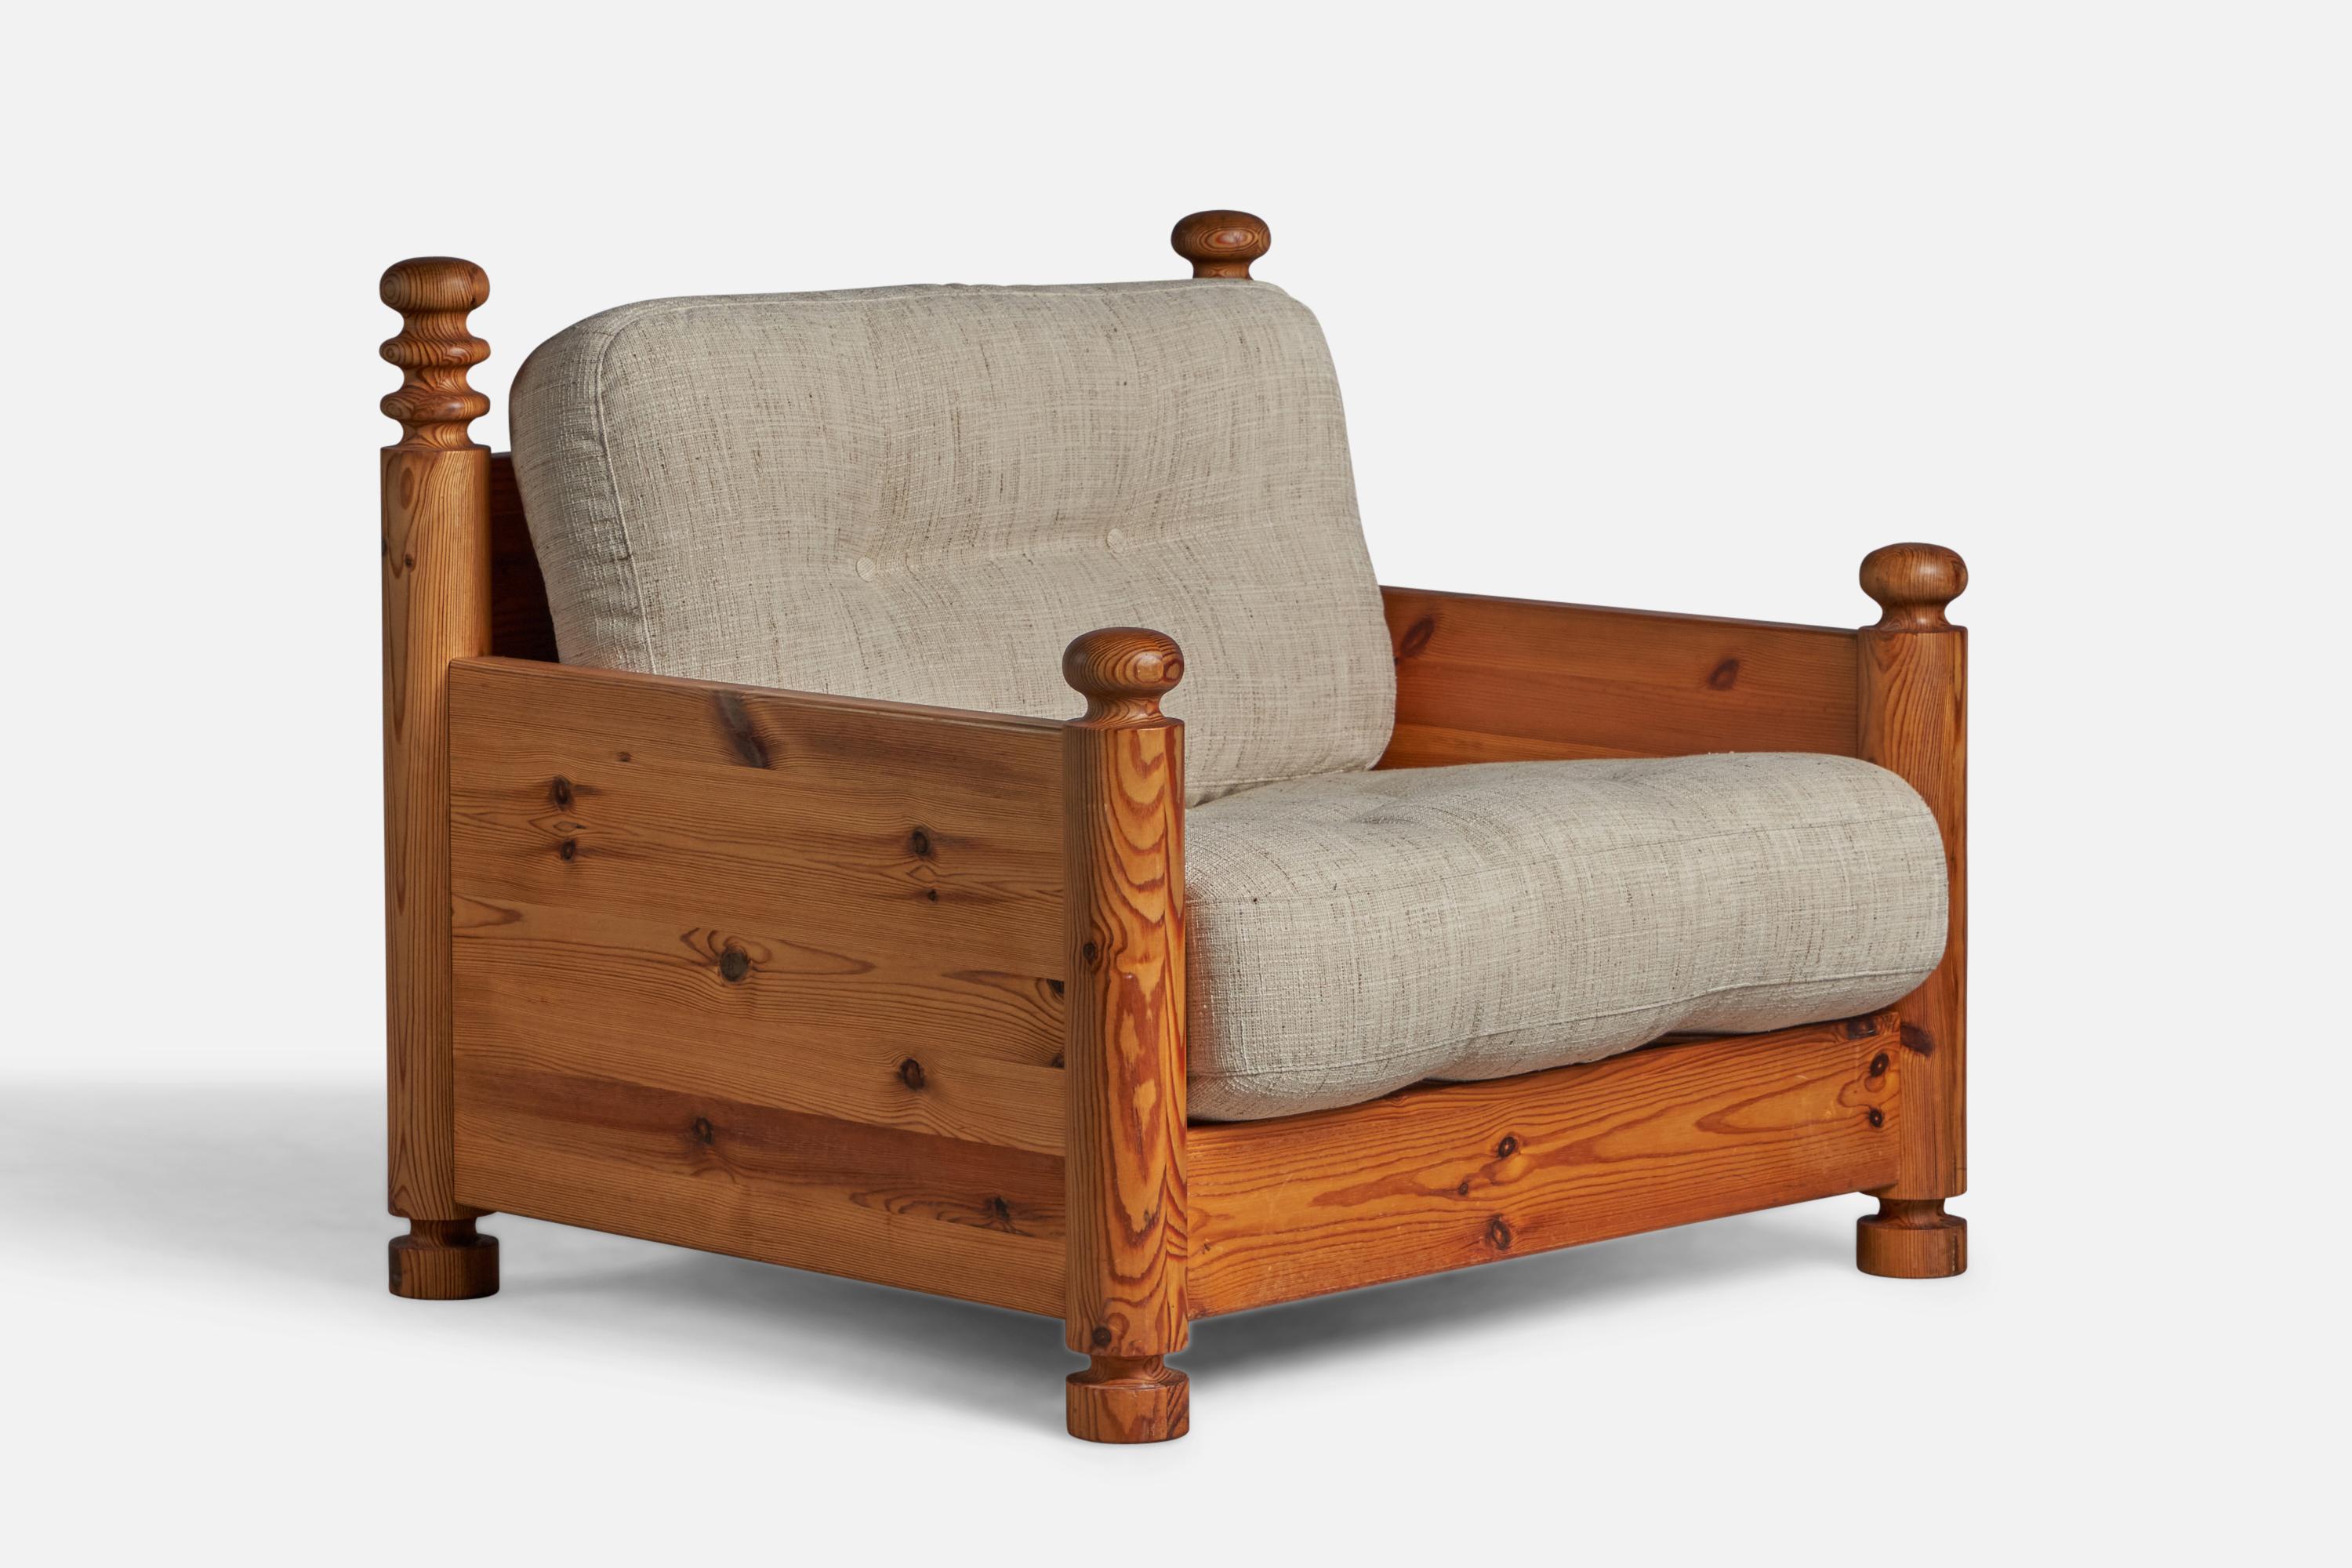 Chaise longue en pin massif et tissu beige conçue par Uno Kristiansson et produite par Luxus, Vittsjö, Suède, c.C. années 1970.
Hauteur d'assise de 16,5 pouces